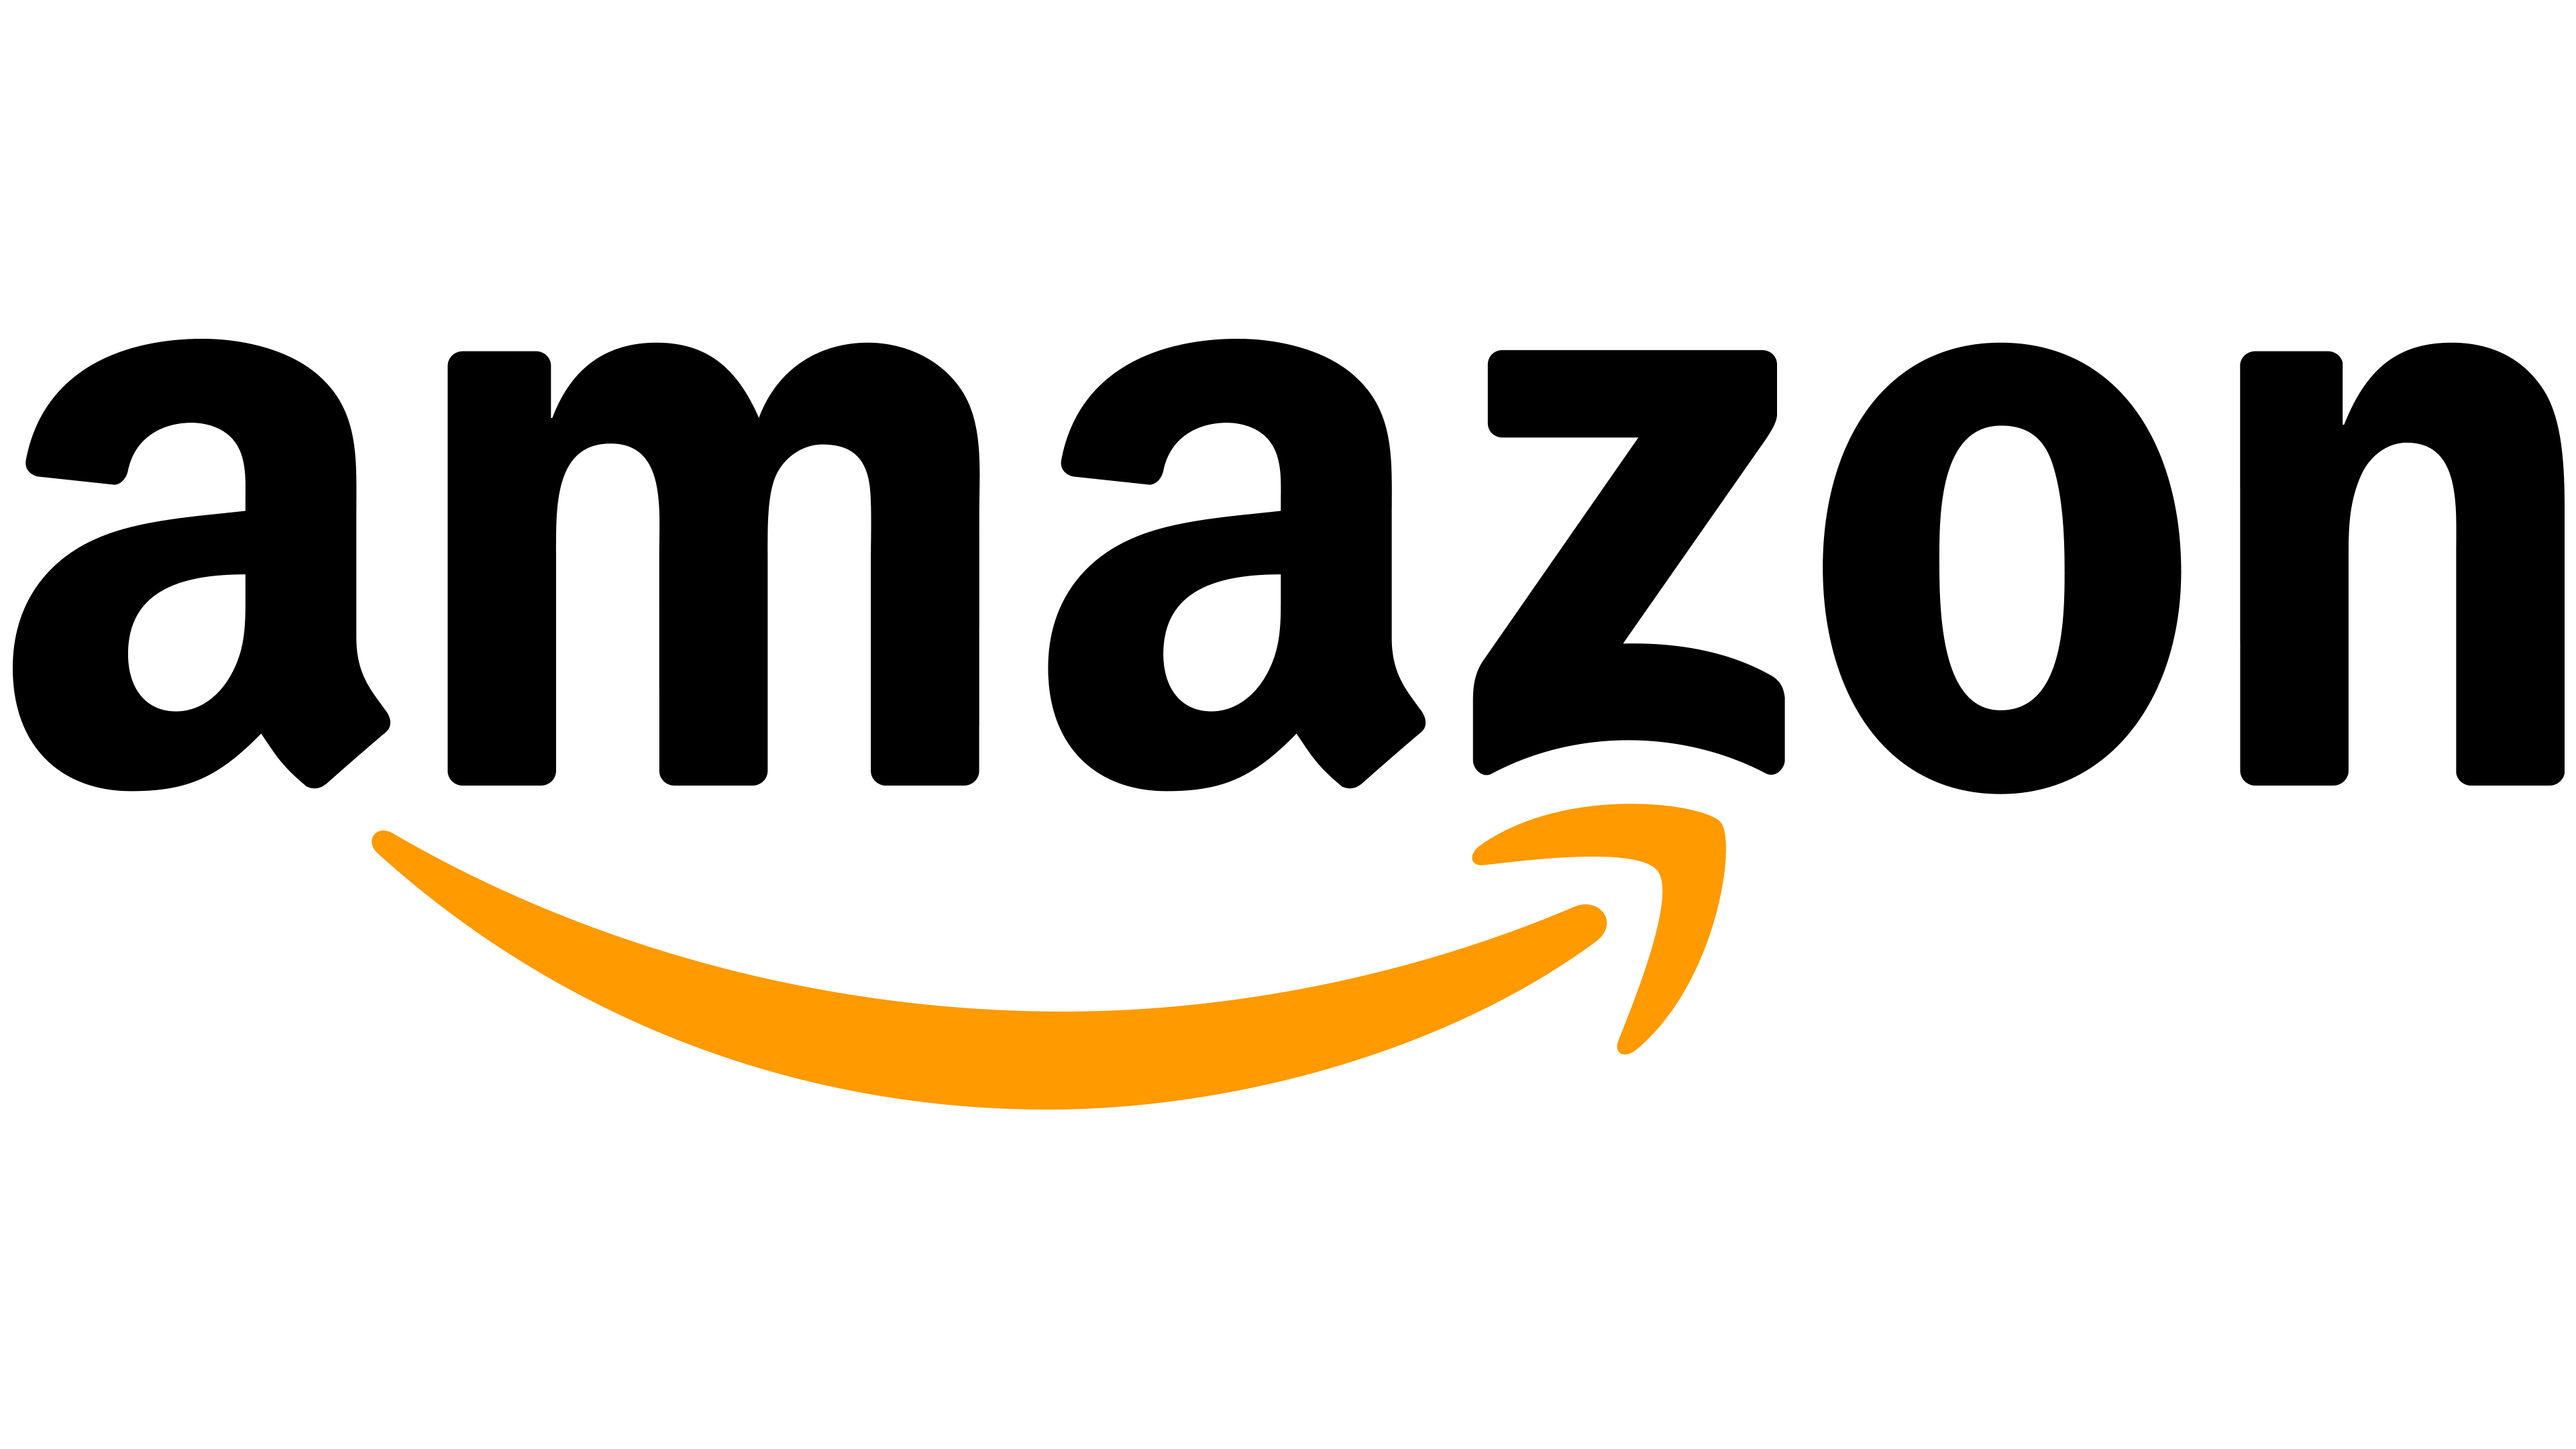 Логотип Amazon - логотип, лого, Amazon